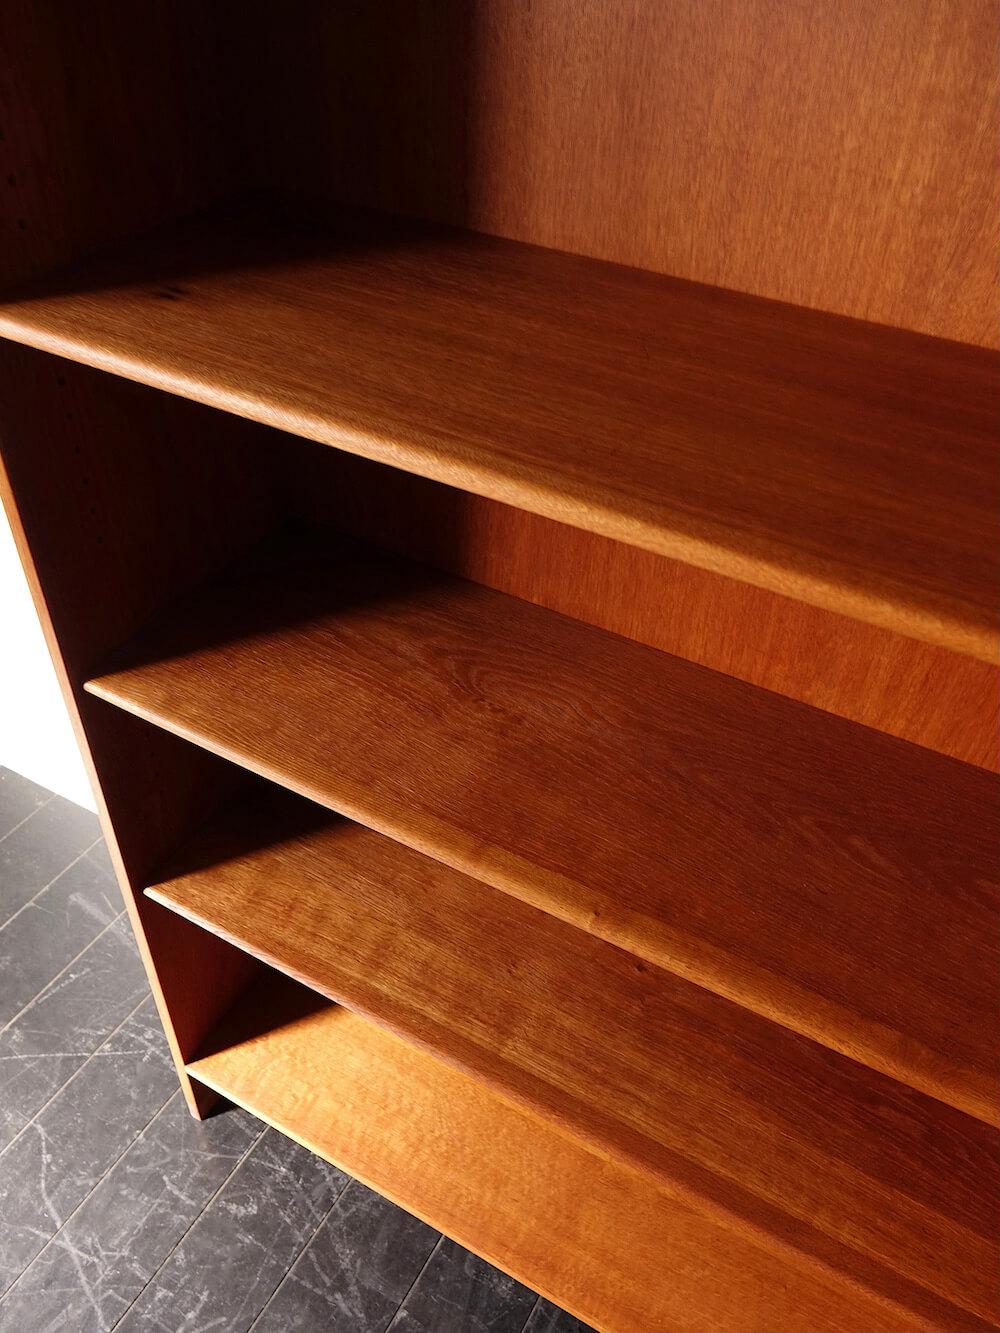 RY8 Bookshelf in teak by Hans J. Wegner for RY mobler in oak